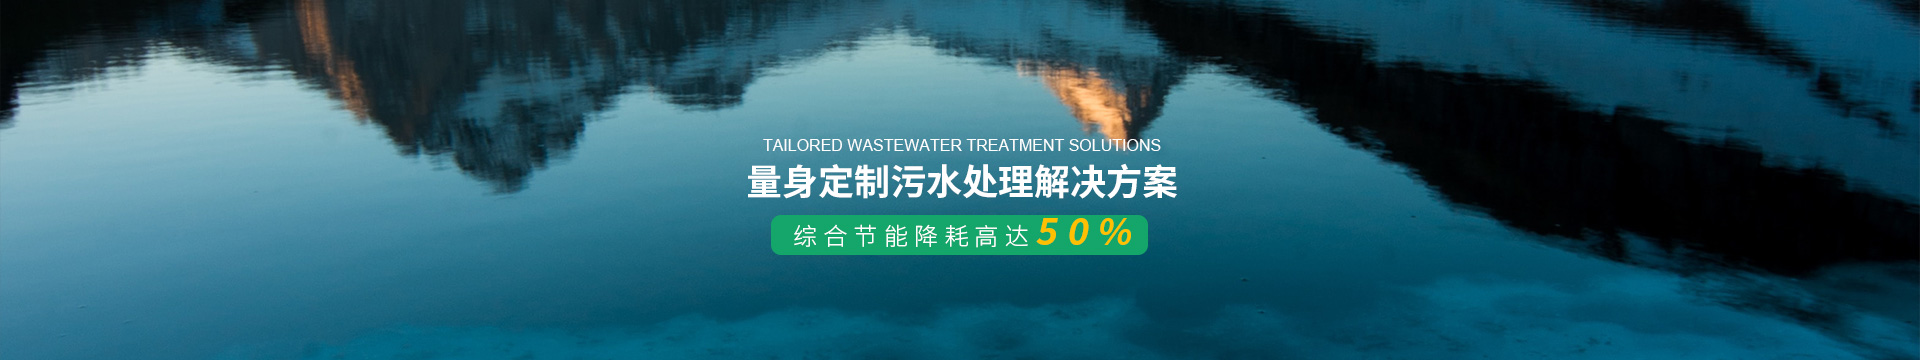 亚太量身定制污水处理解决方案